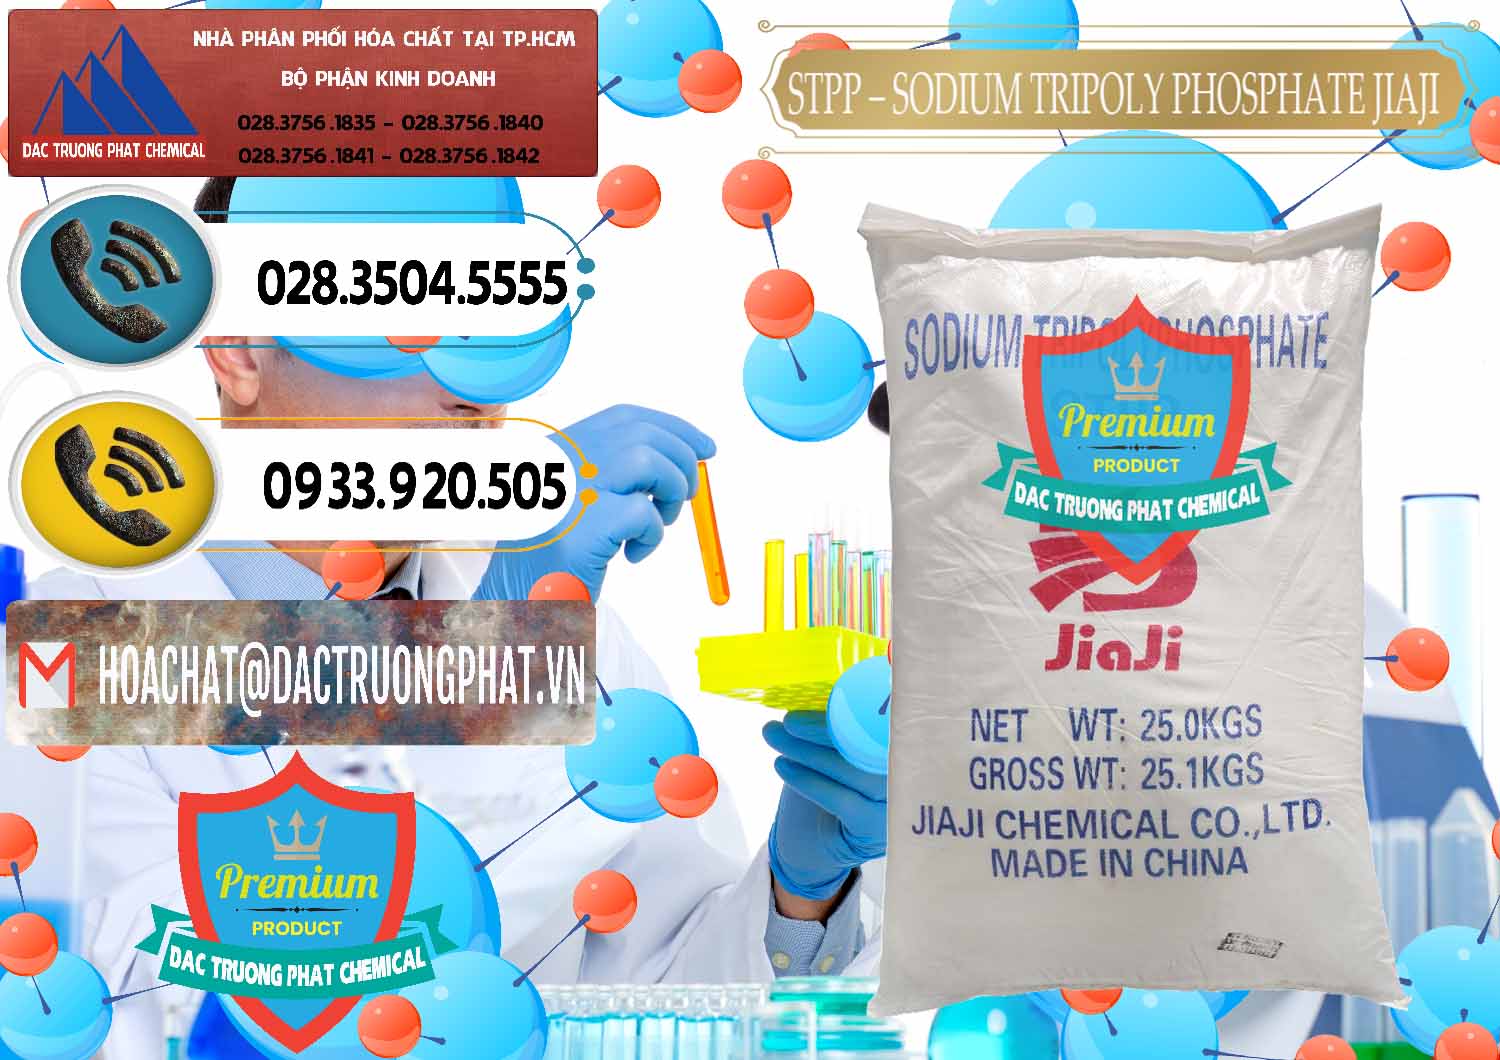 Chuyên bán ( cung cấp ) Sodium Tripoly Phosphate - STPP Jiaji Trung Quốc China - 0154 - Công ty chuyên cung ứng & phân phối hóa chất tại TP.HCM - hoachatdetnhuom.vn